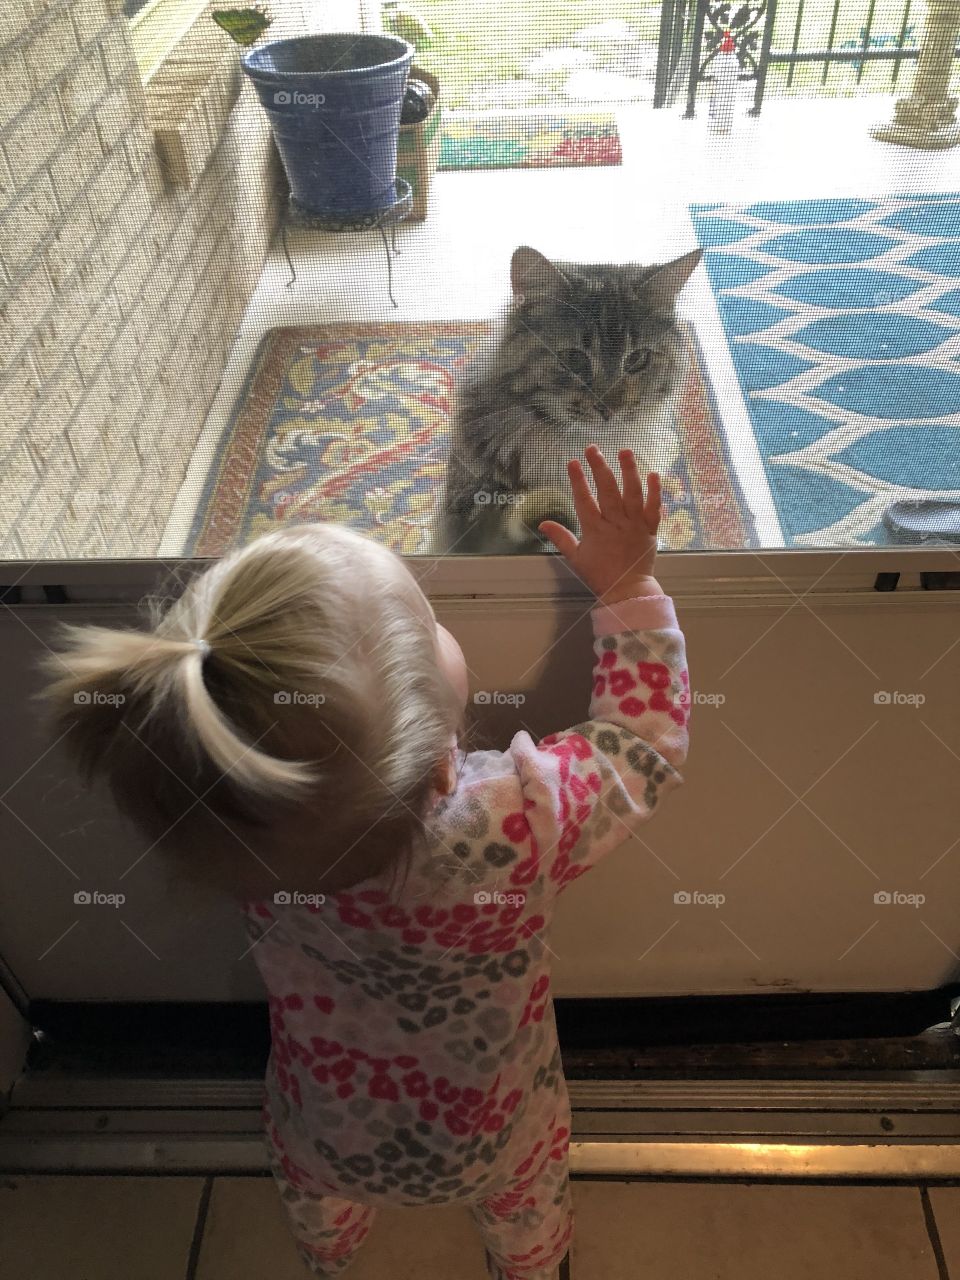 Baby meets cat